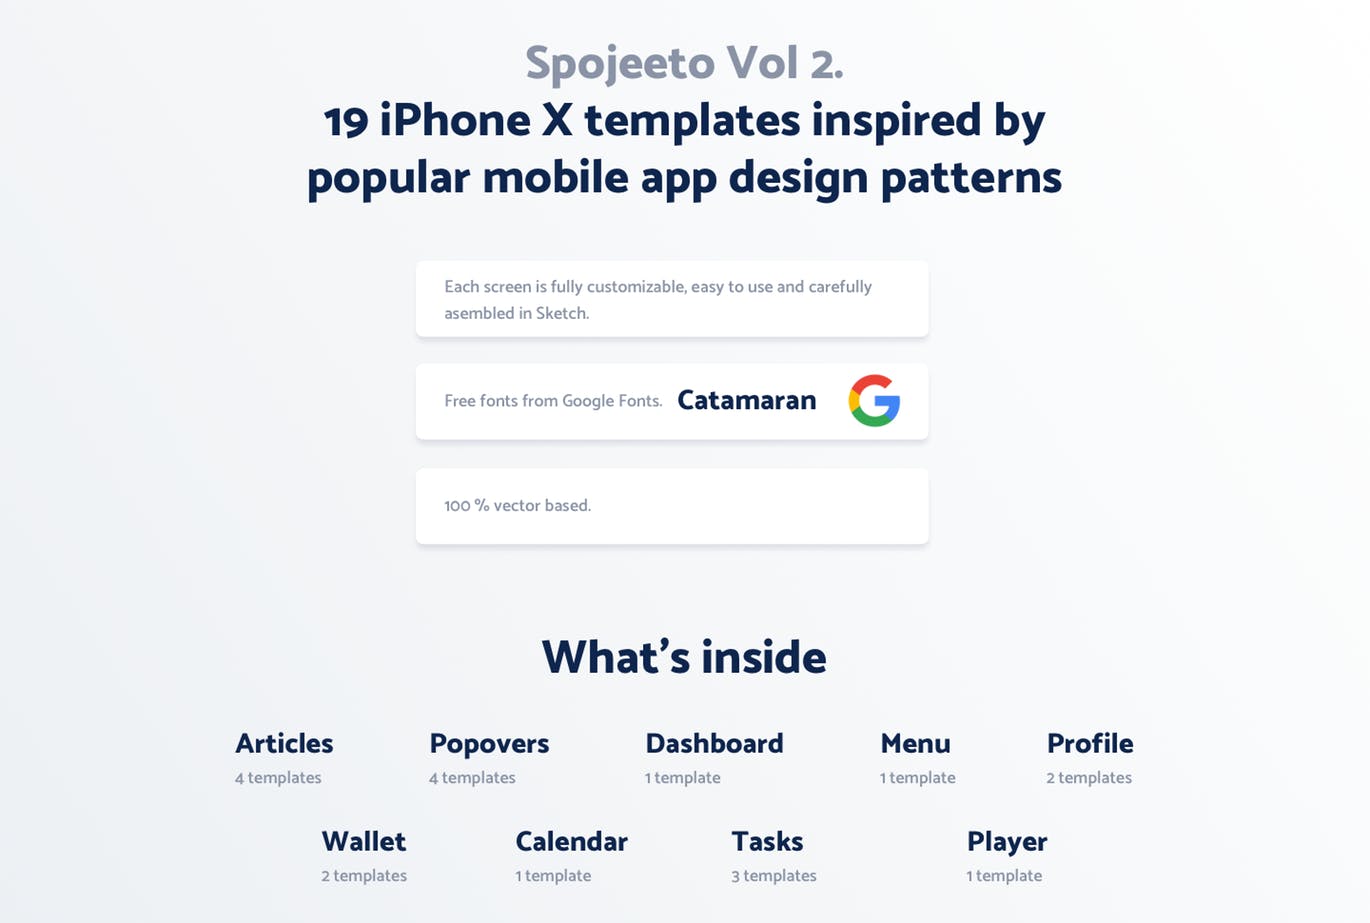 极简主义设计风格APP应用UI设计非凡图库精选套件v2 Vol. 2 – Spojeeto Mobile App UI Kit插图(1)